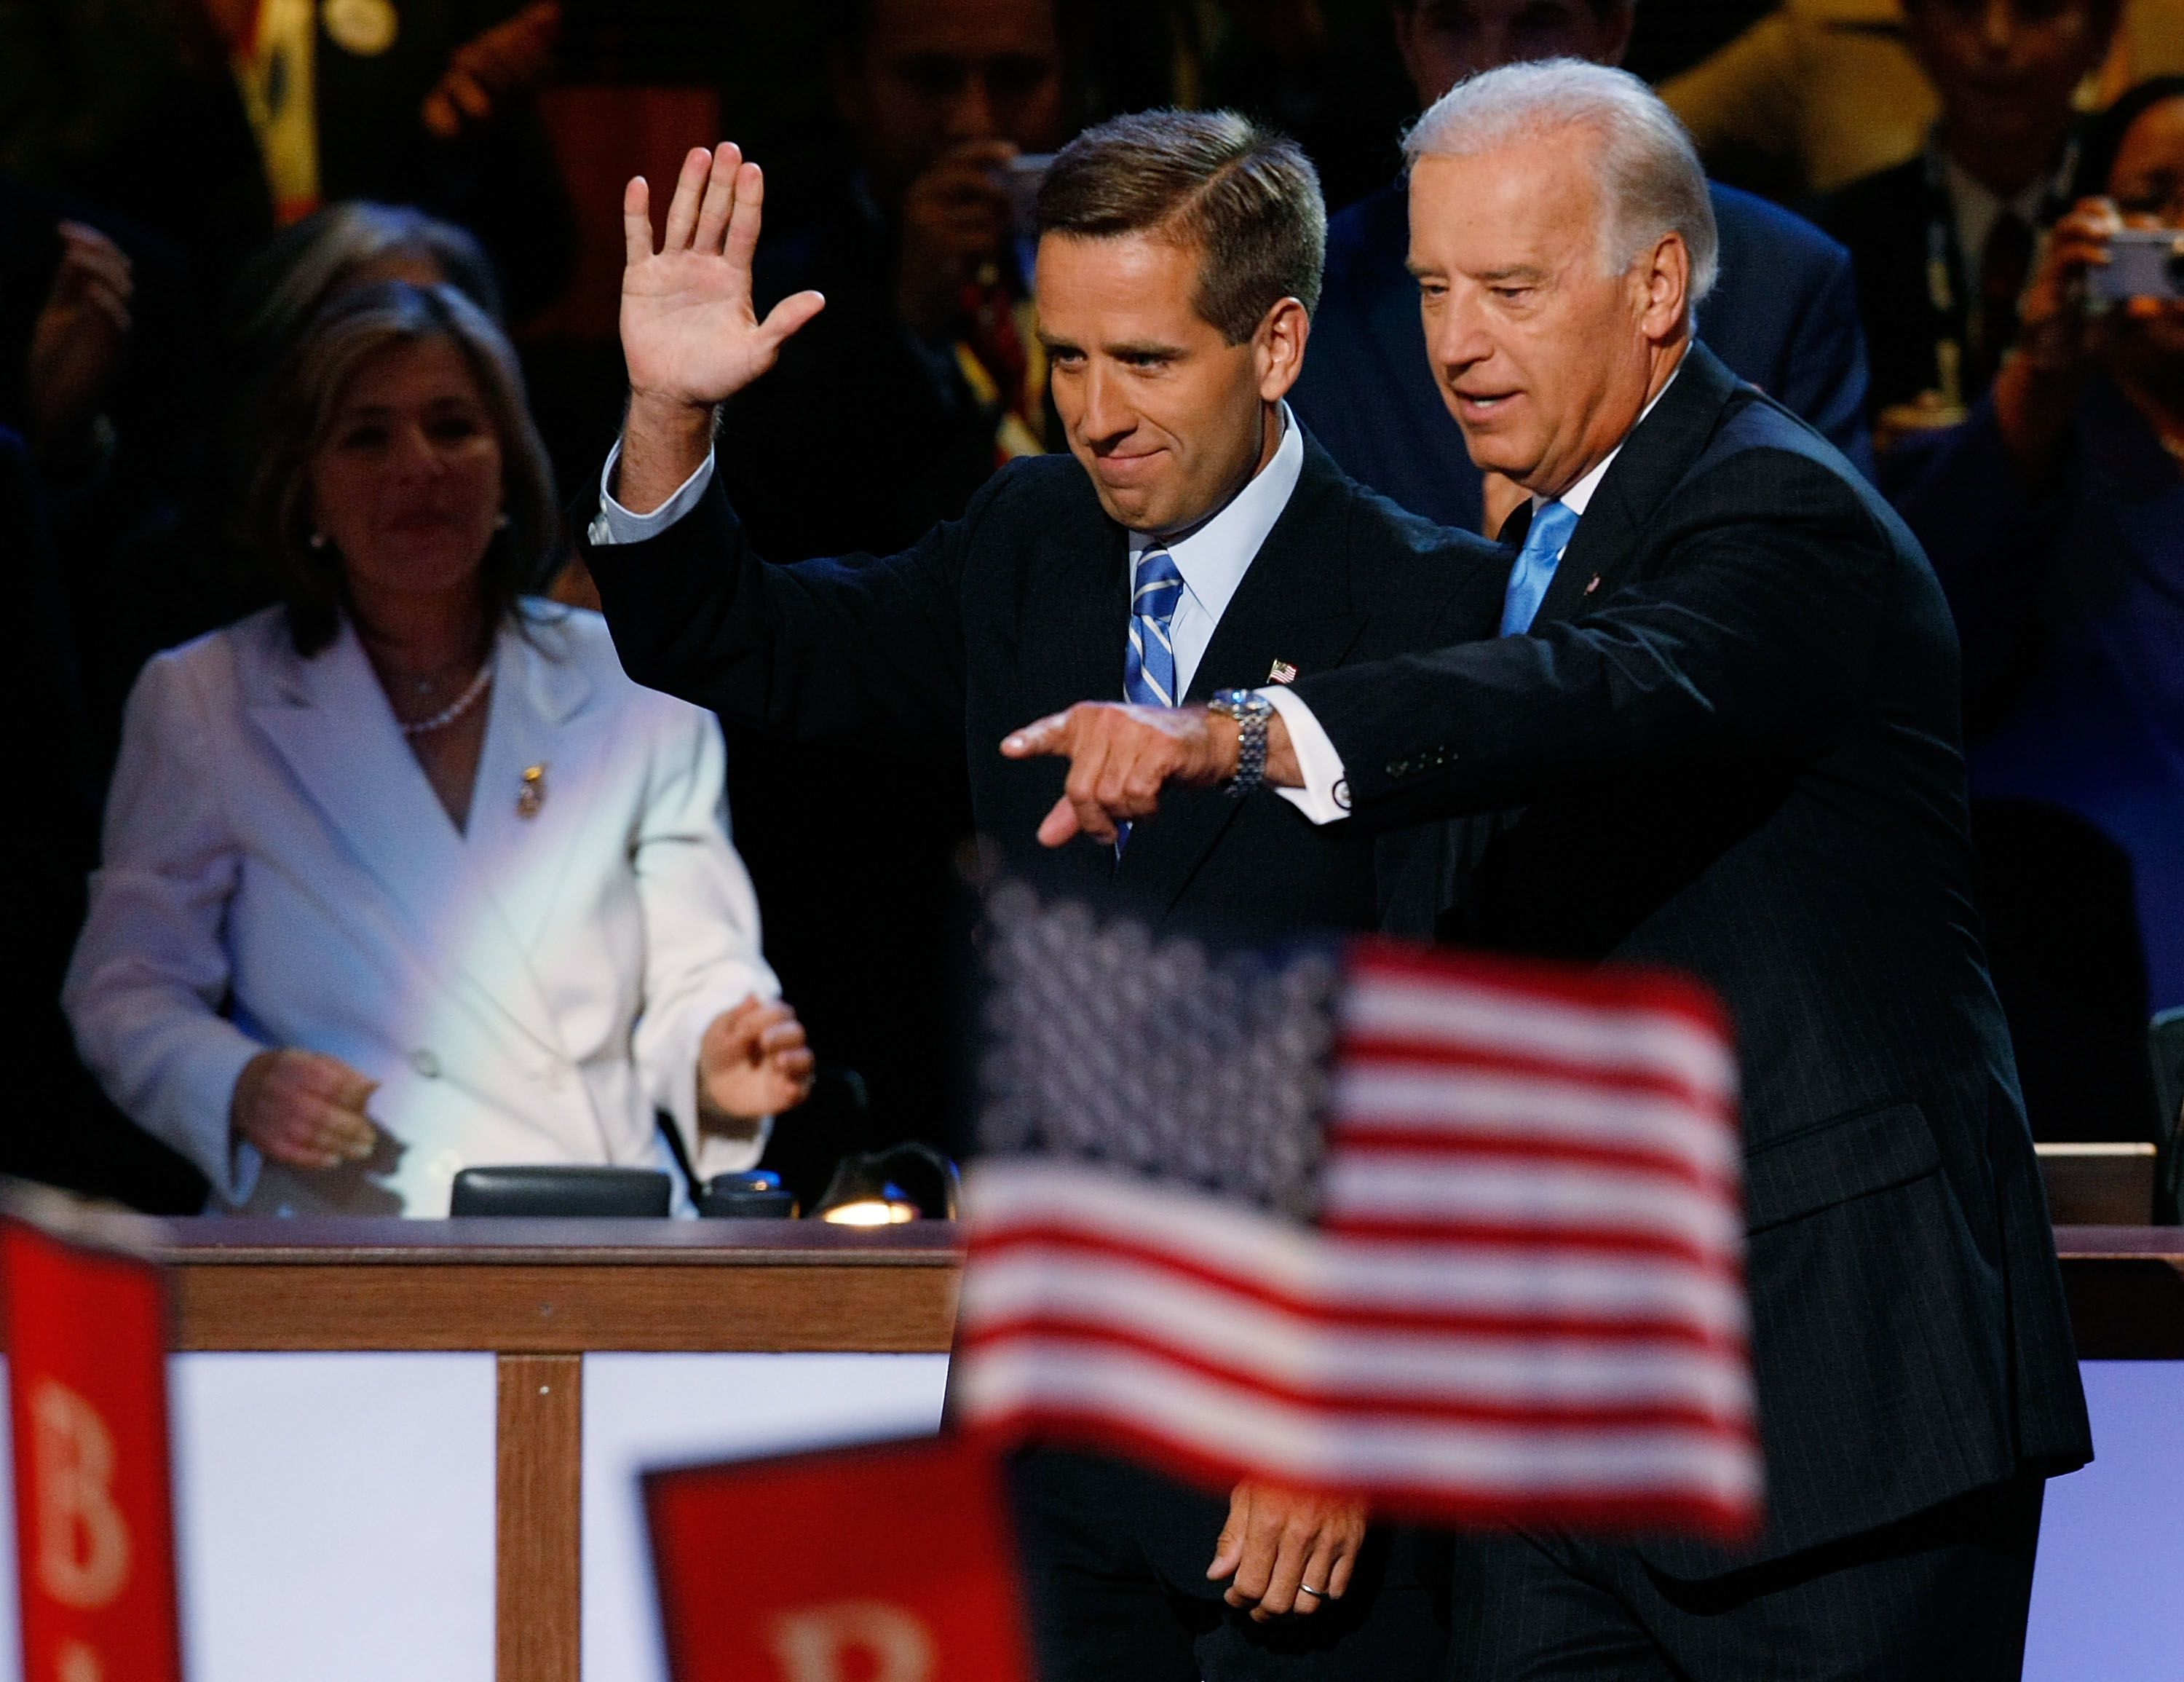 Beau Biden, son of VP dies at 46 | CNN Politics